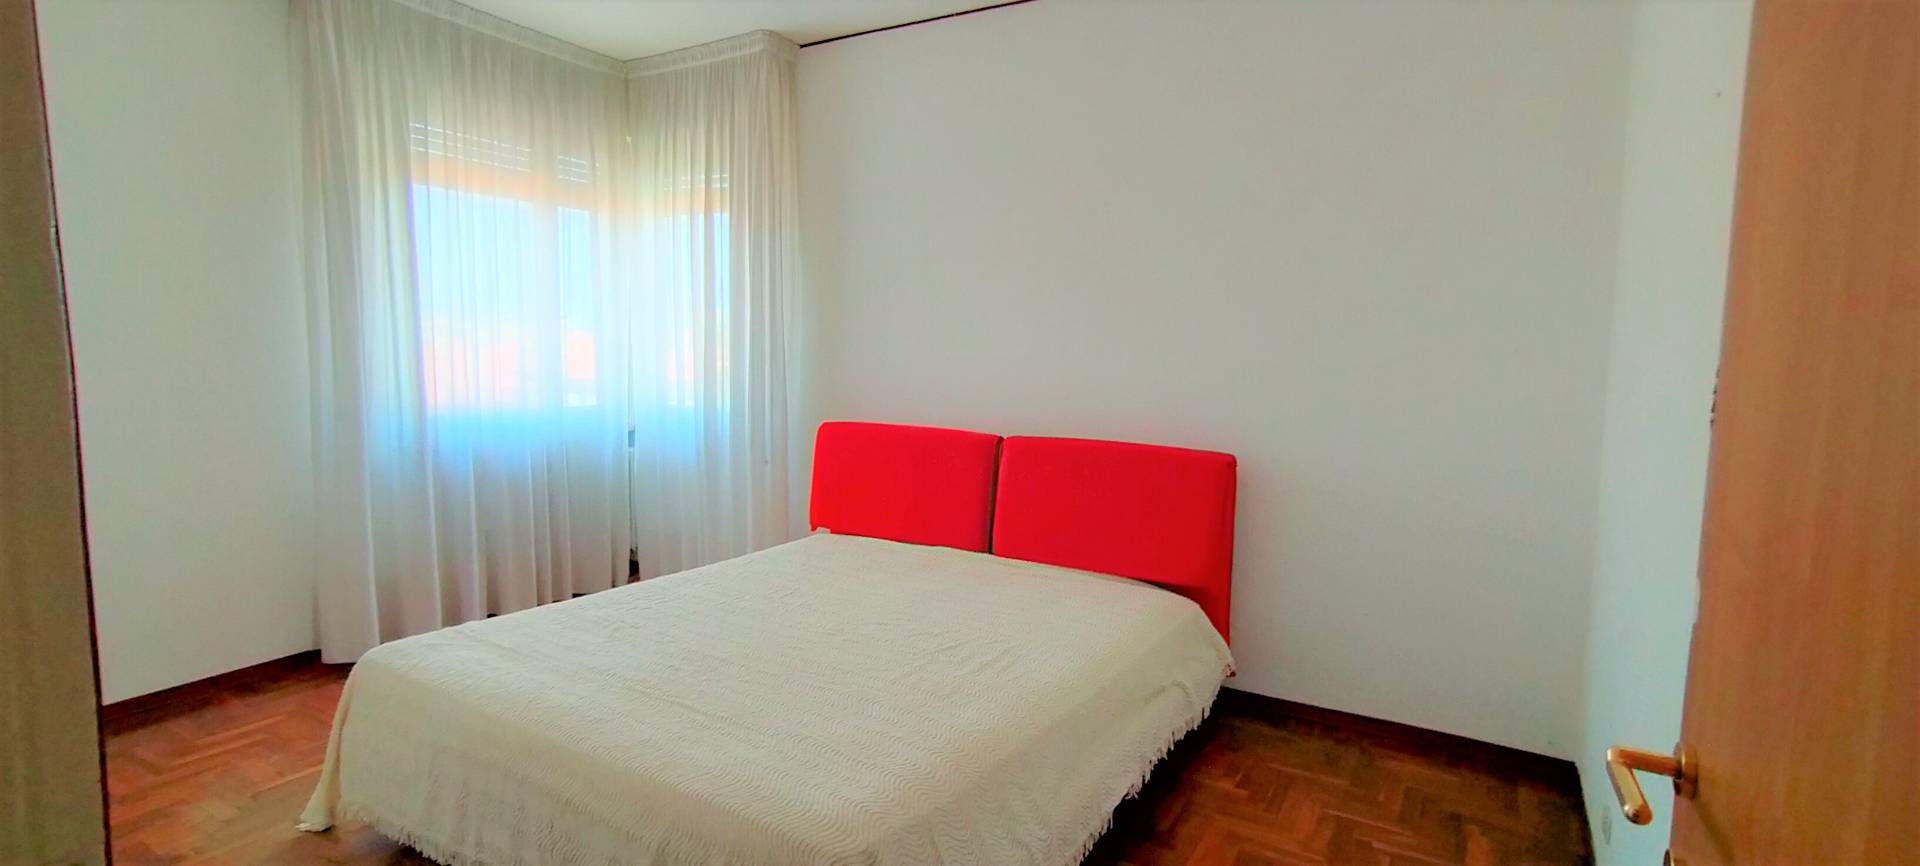 Appartamento in vendita a Udine, 4 locali, zona Zona: Semicentro, prezzo € 83.000 | CambioCasa.it